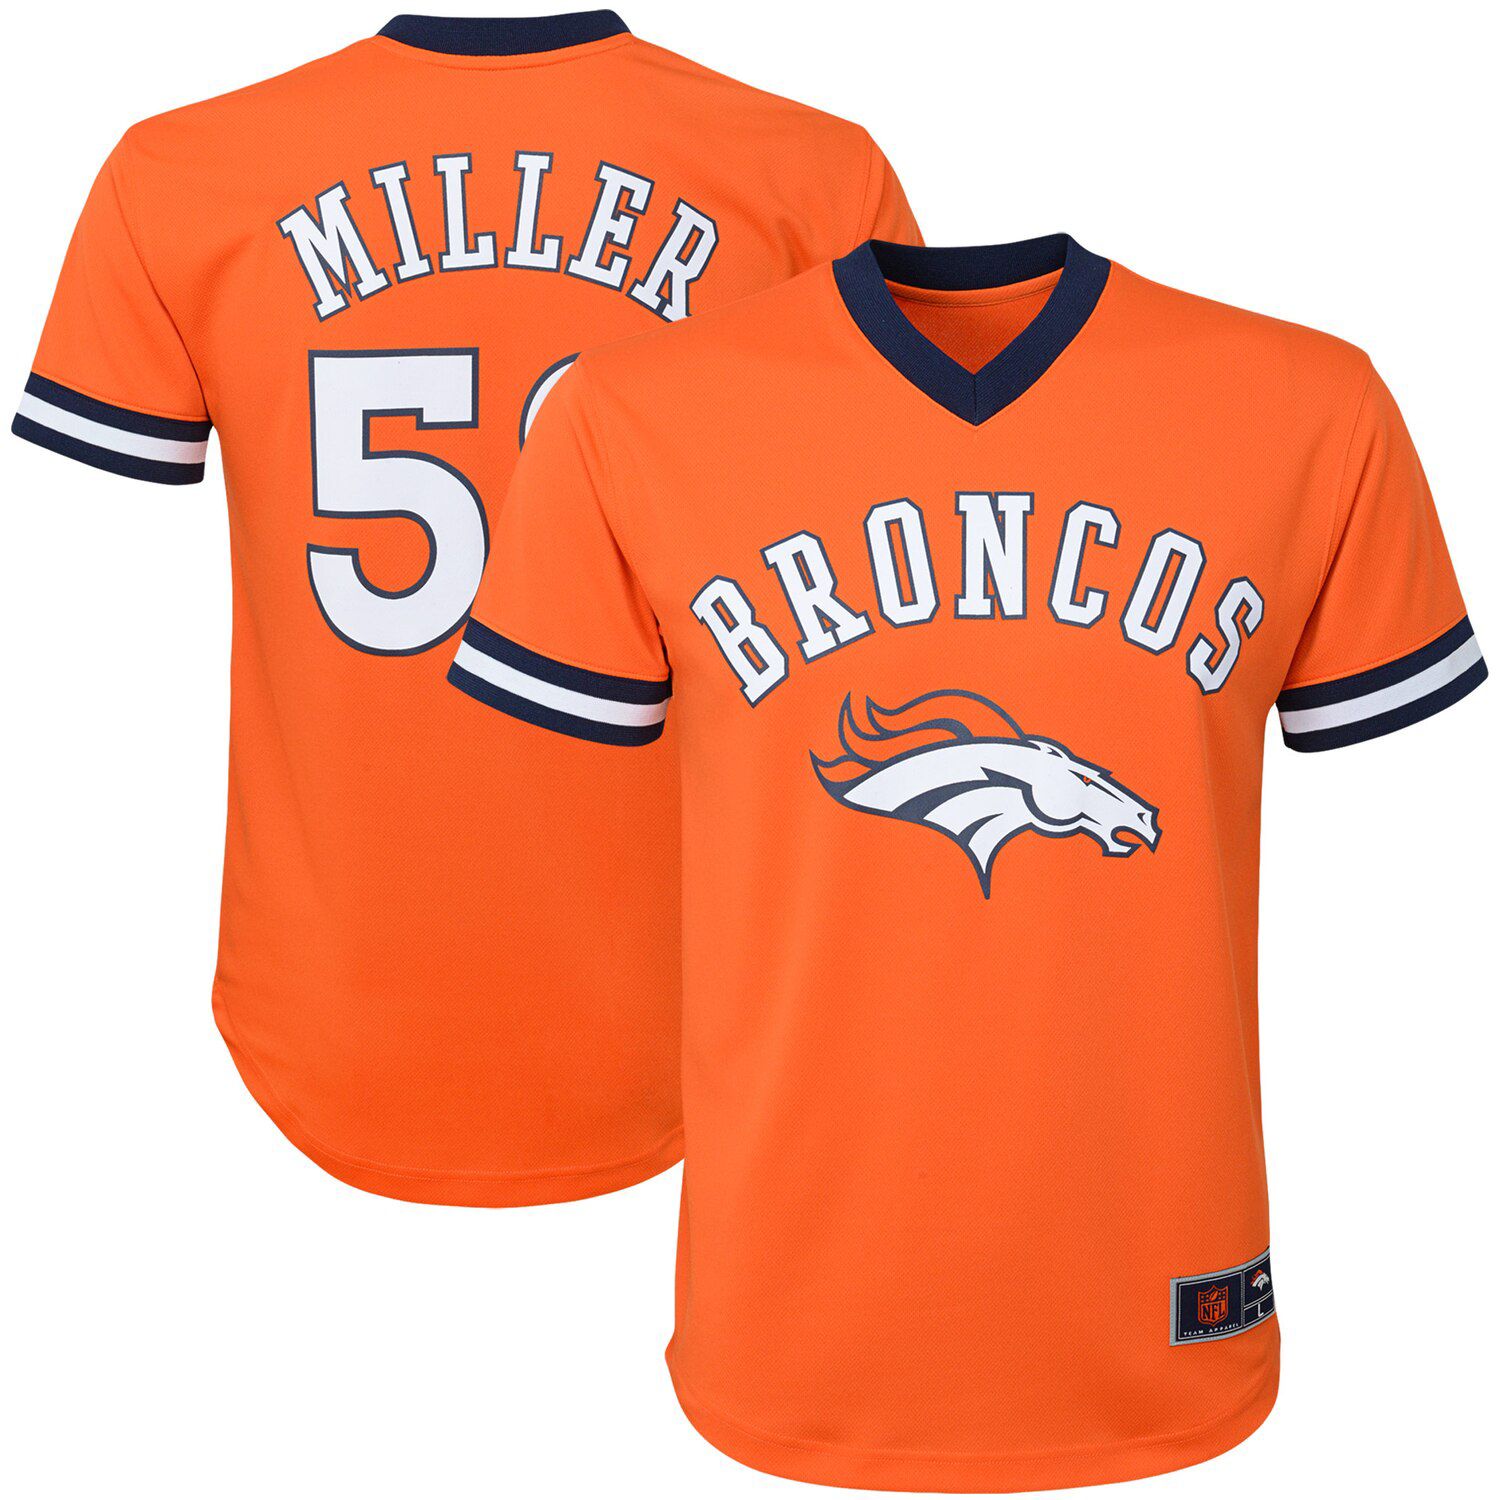 von miller orange broncos jersey